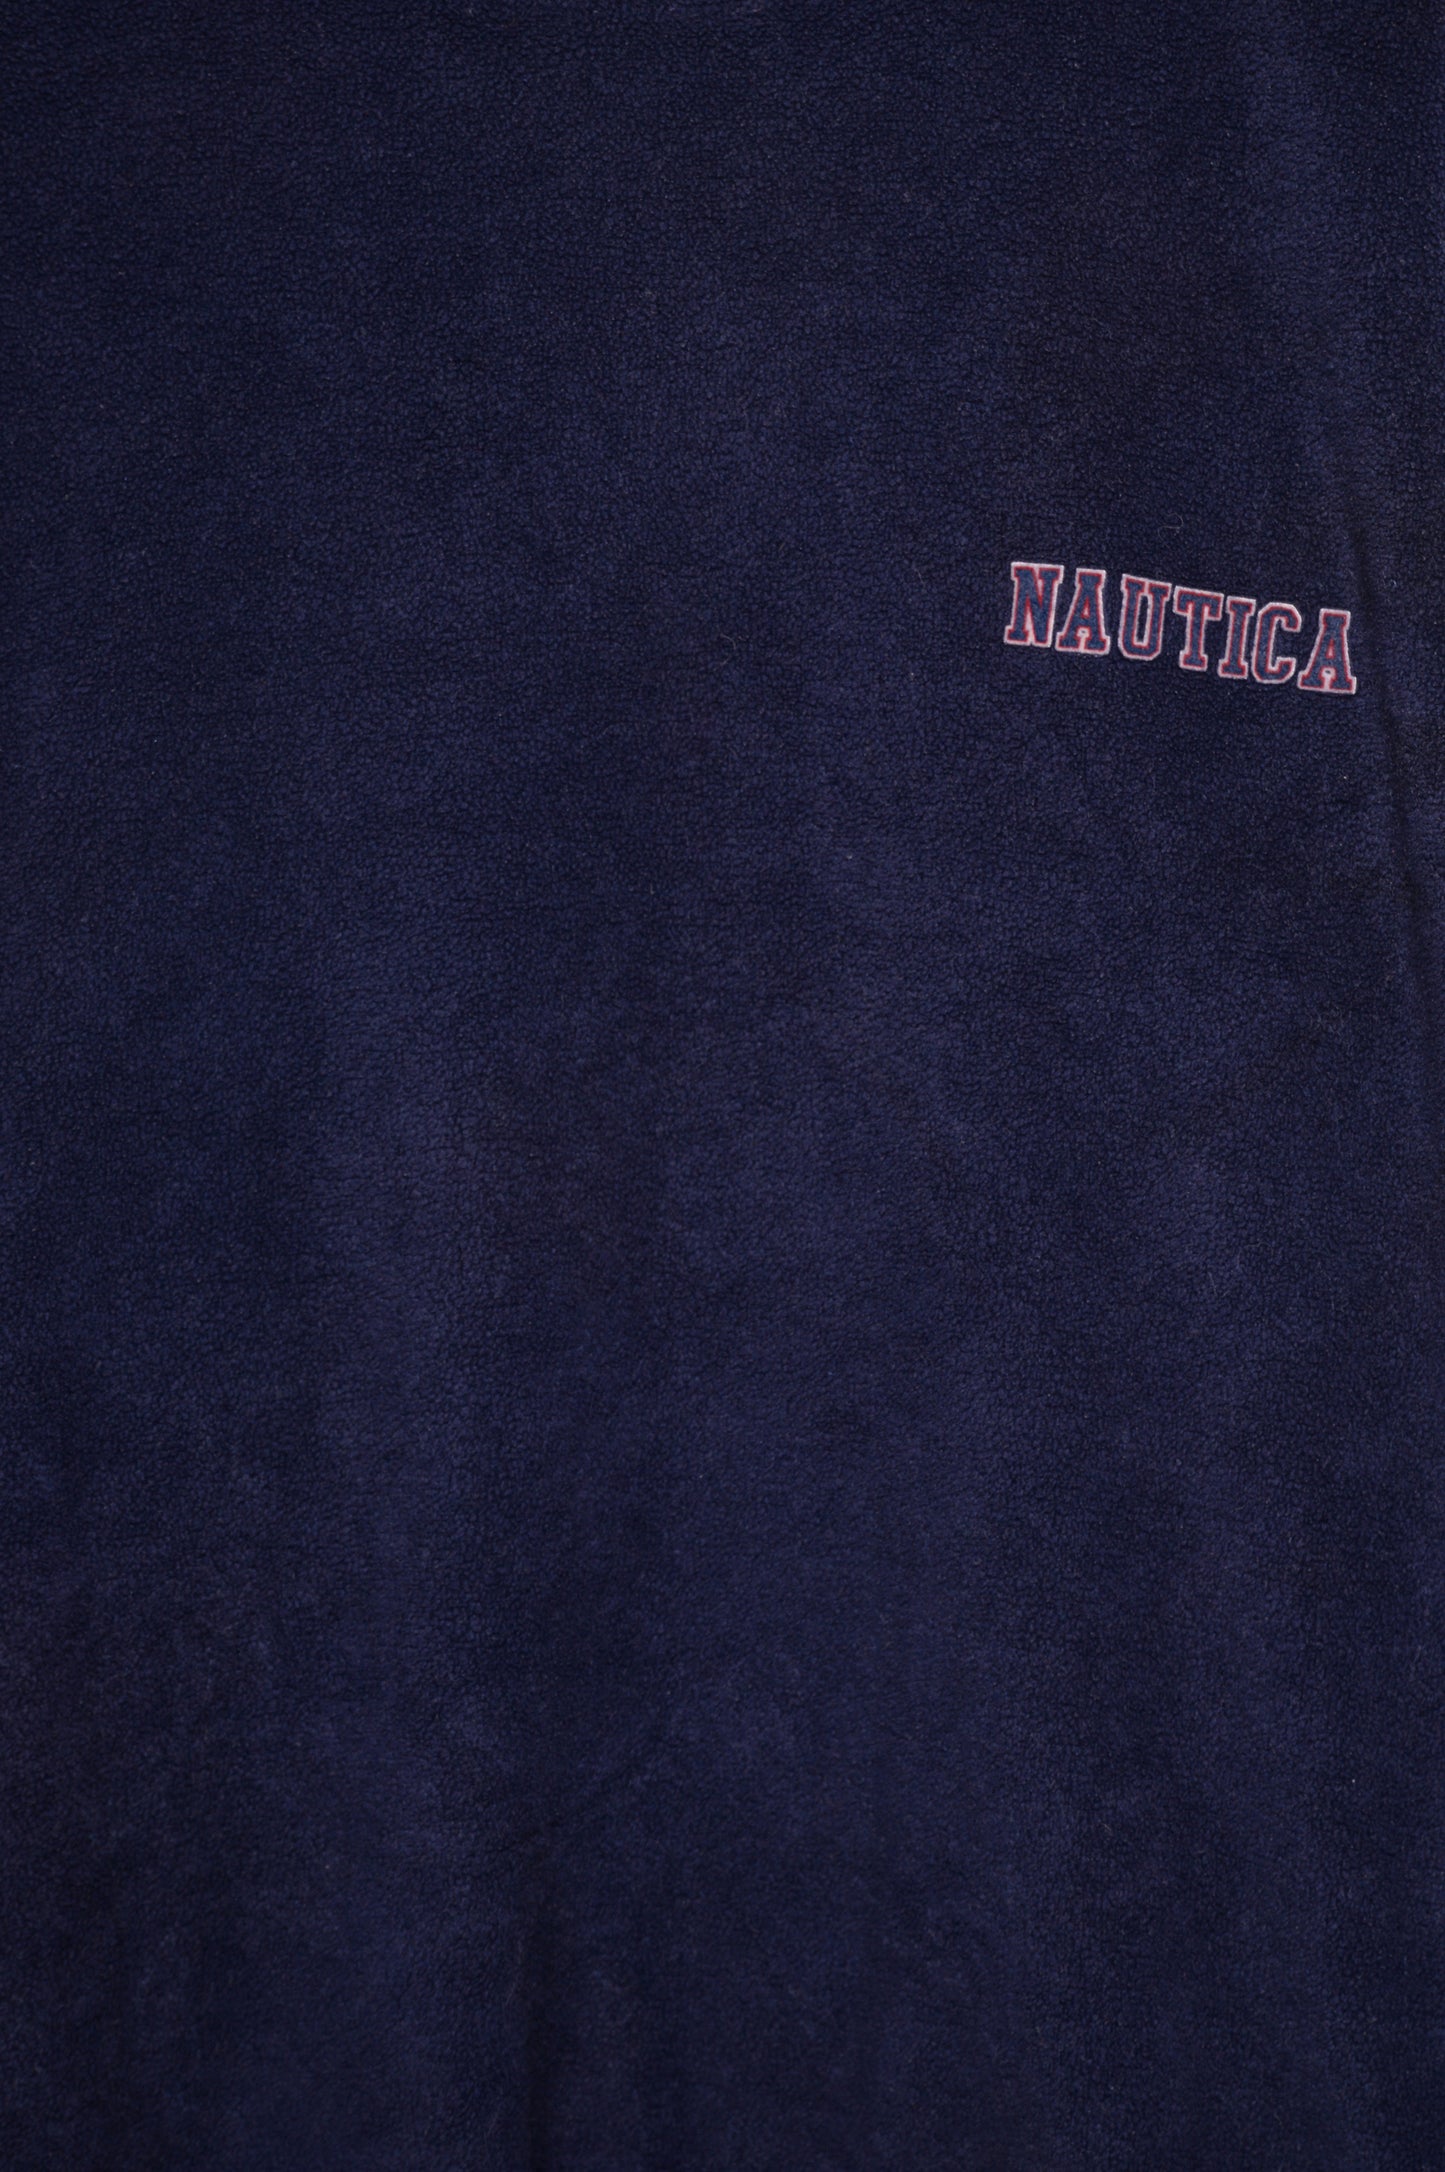 Nautica Fleece Sweatshirt USA